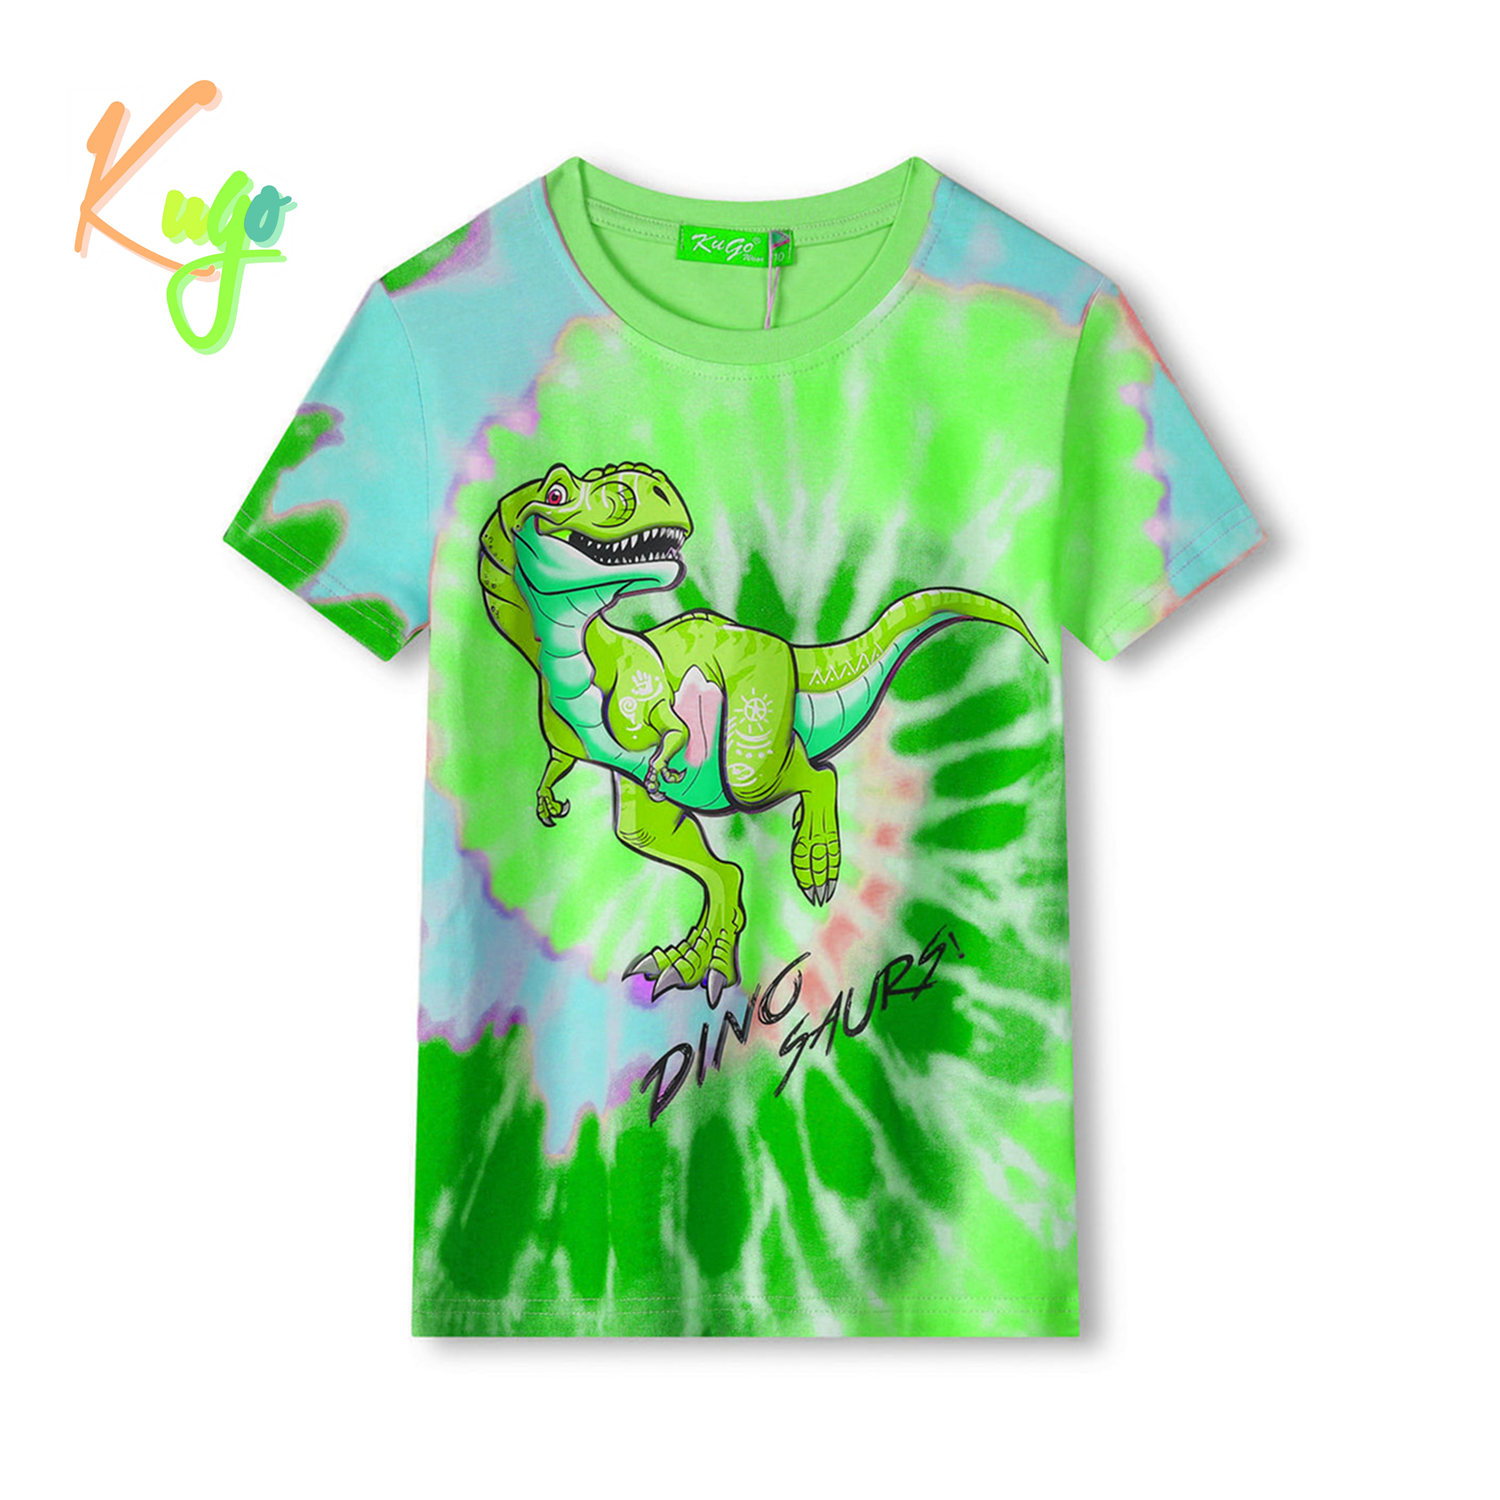 Chlapecké tričko - KUGO FC0301, zelená / modrý dinosaurus Barva: Zelená, Velikost: 104